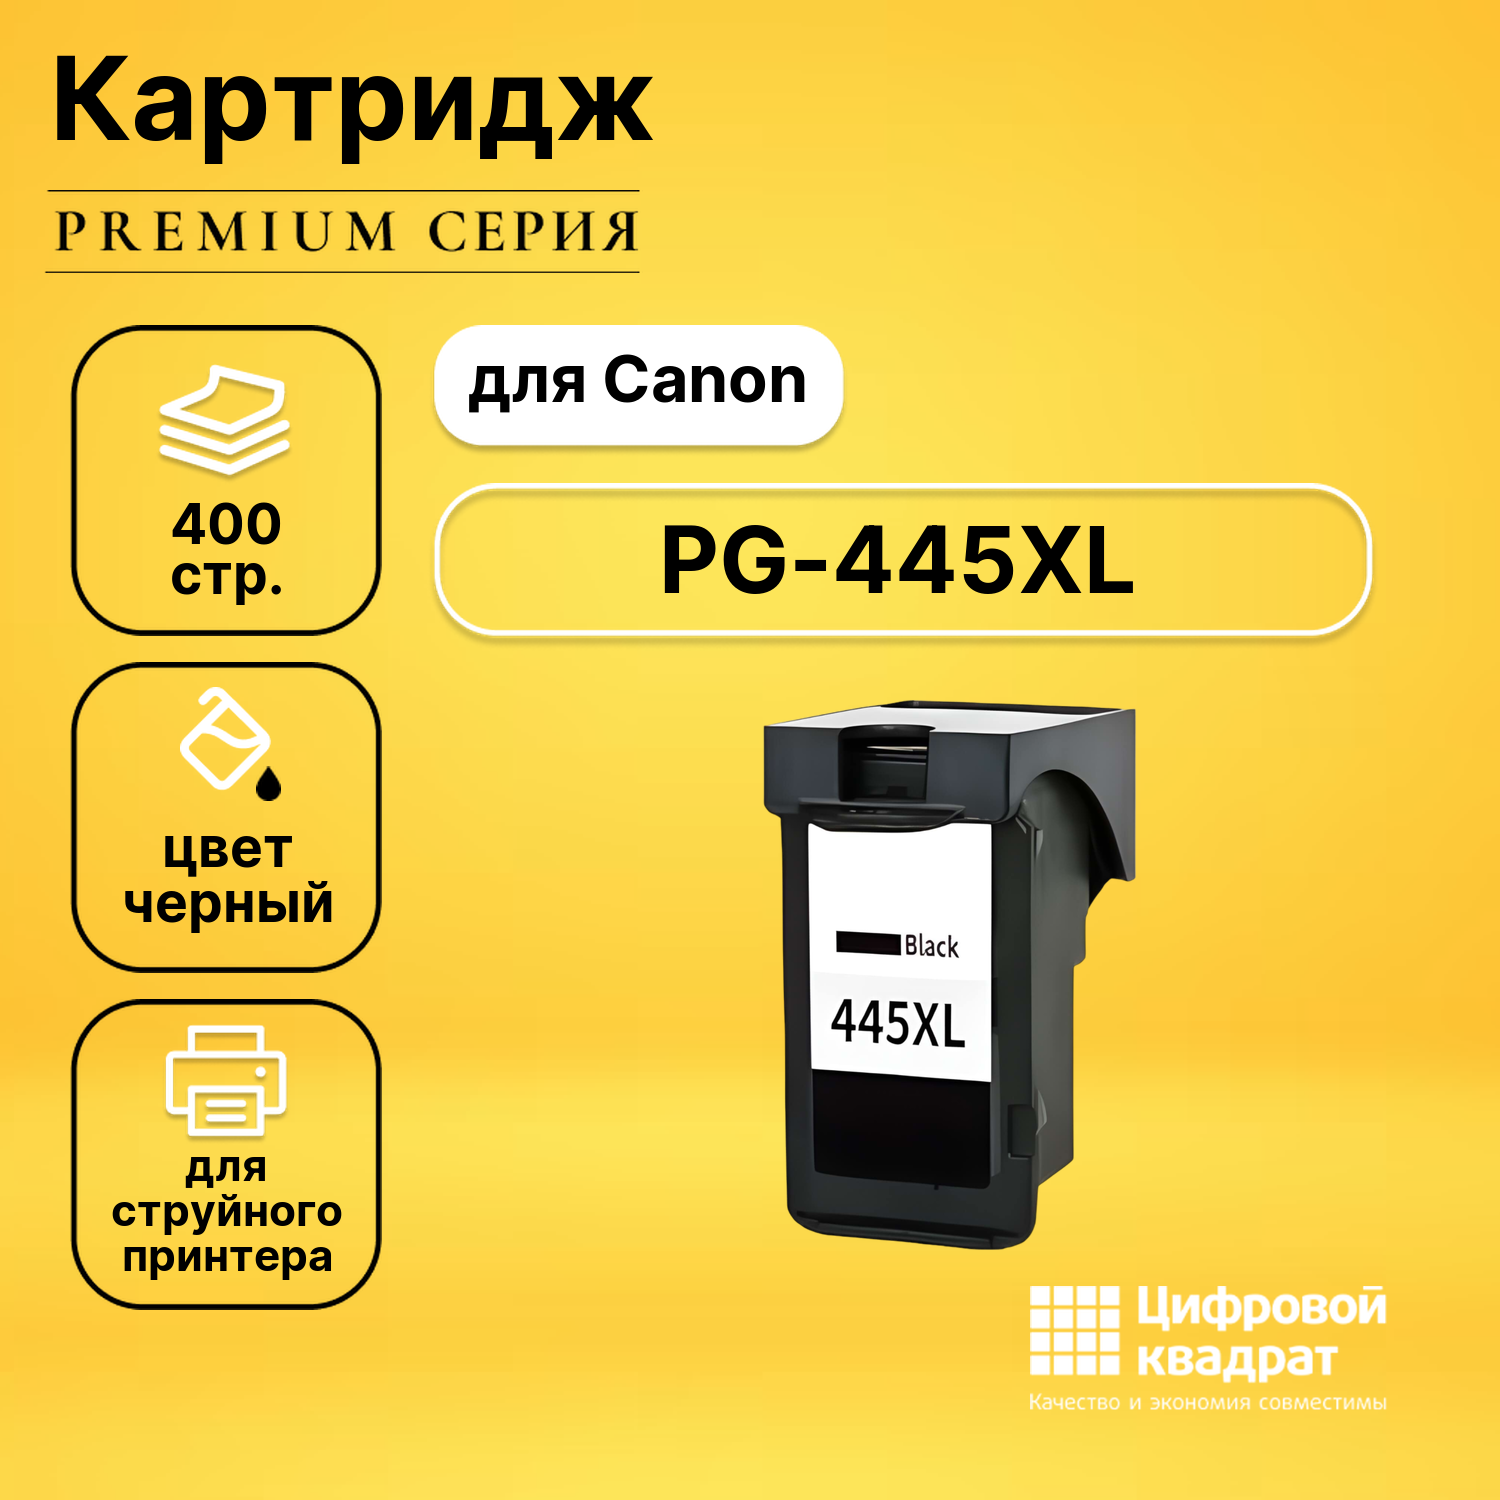 Картридж DS PG-445XL Canon 8282B001 черный увеличенный ресурс совместимый